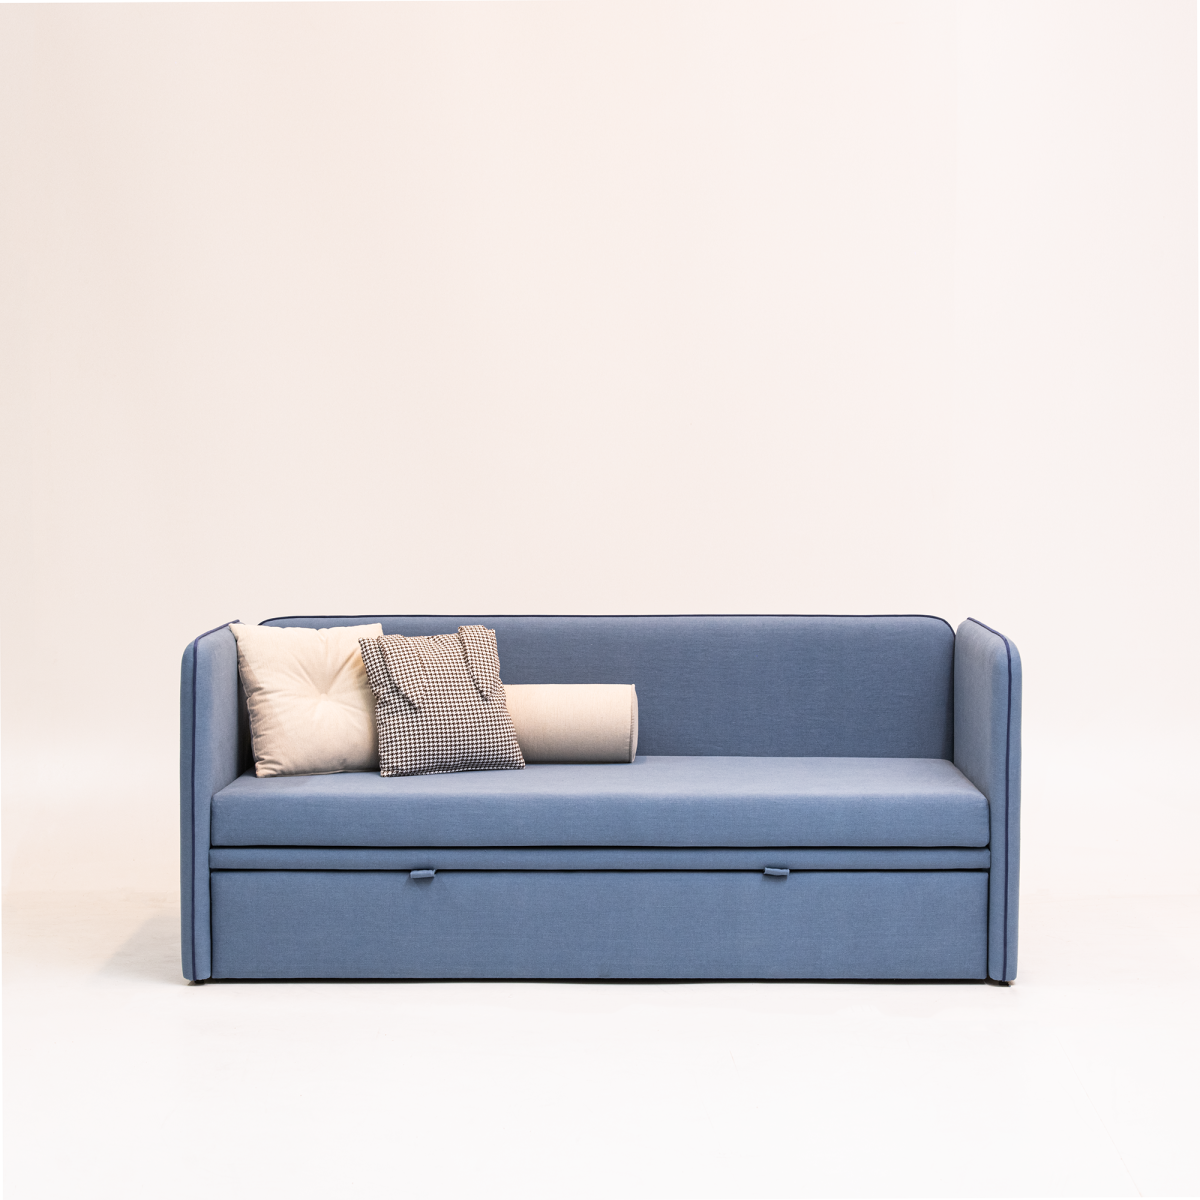 Детская кровать-диван на заказ с минималистичным дизайном